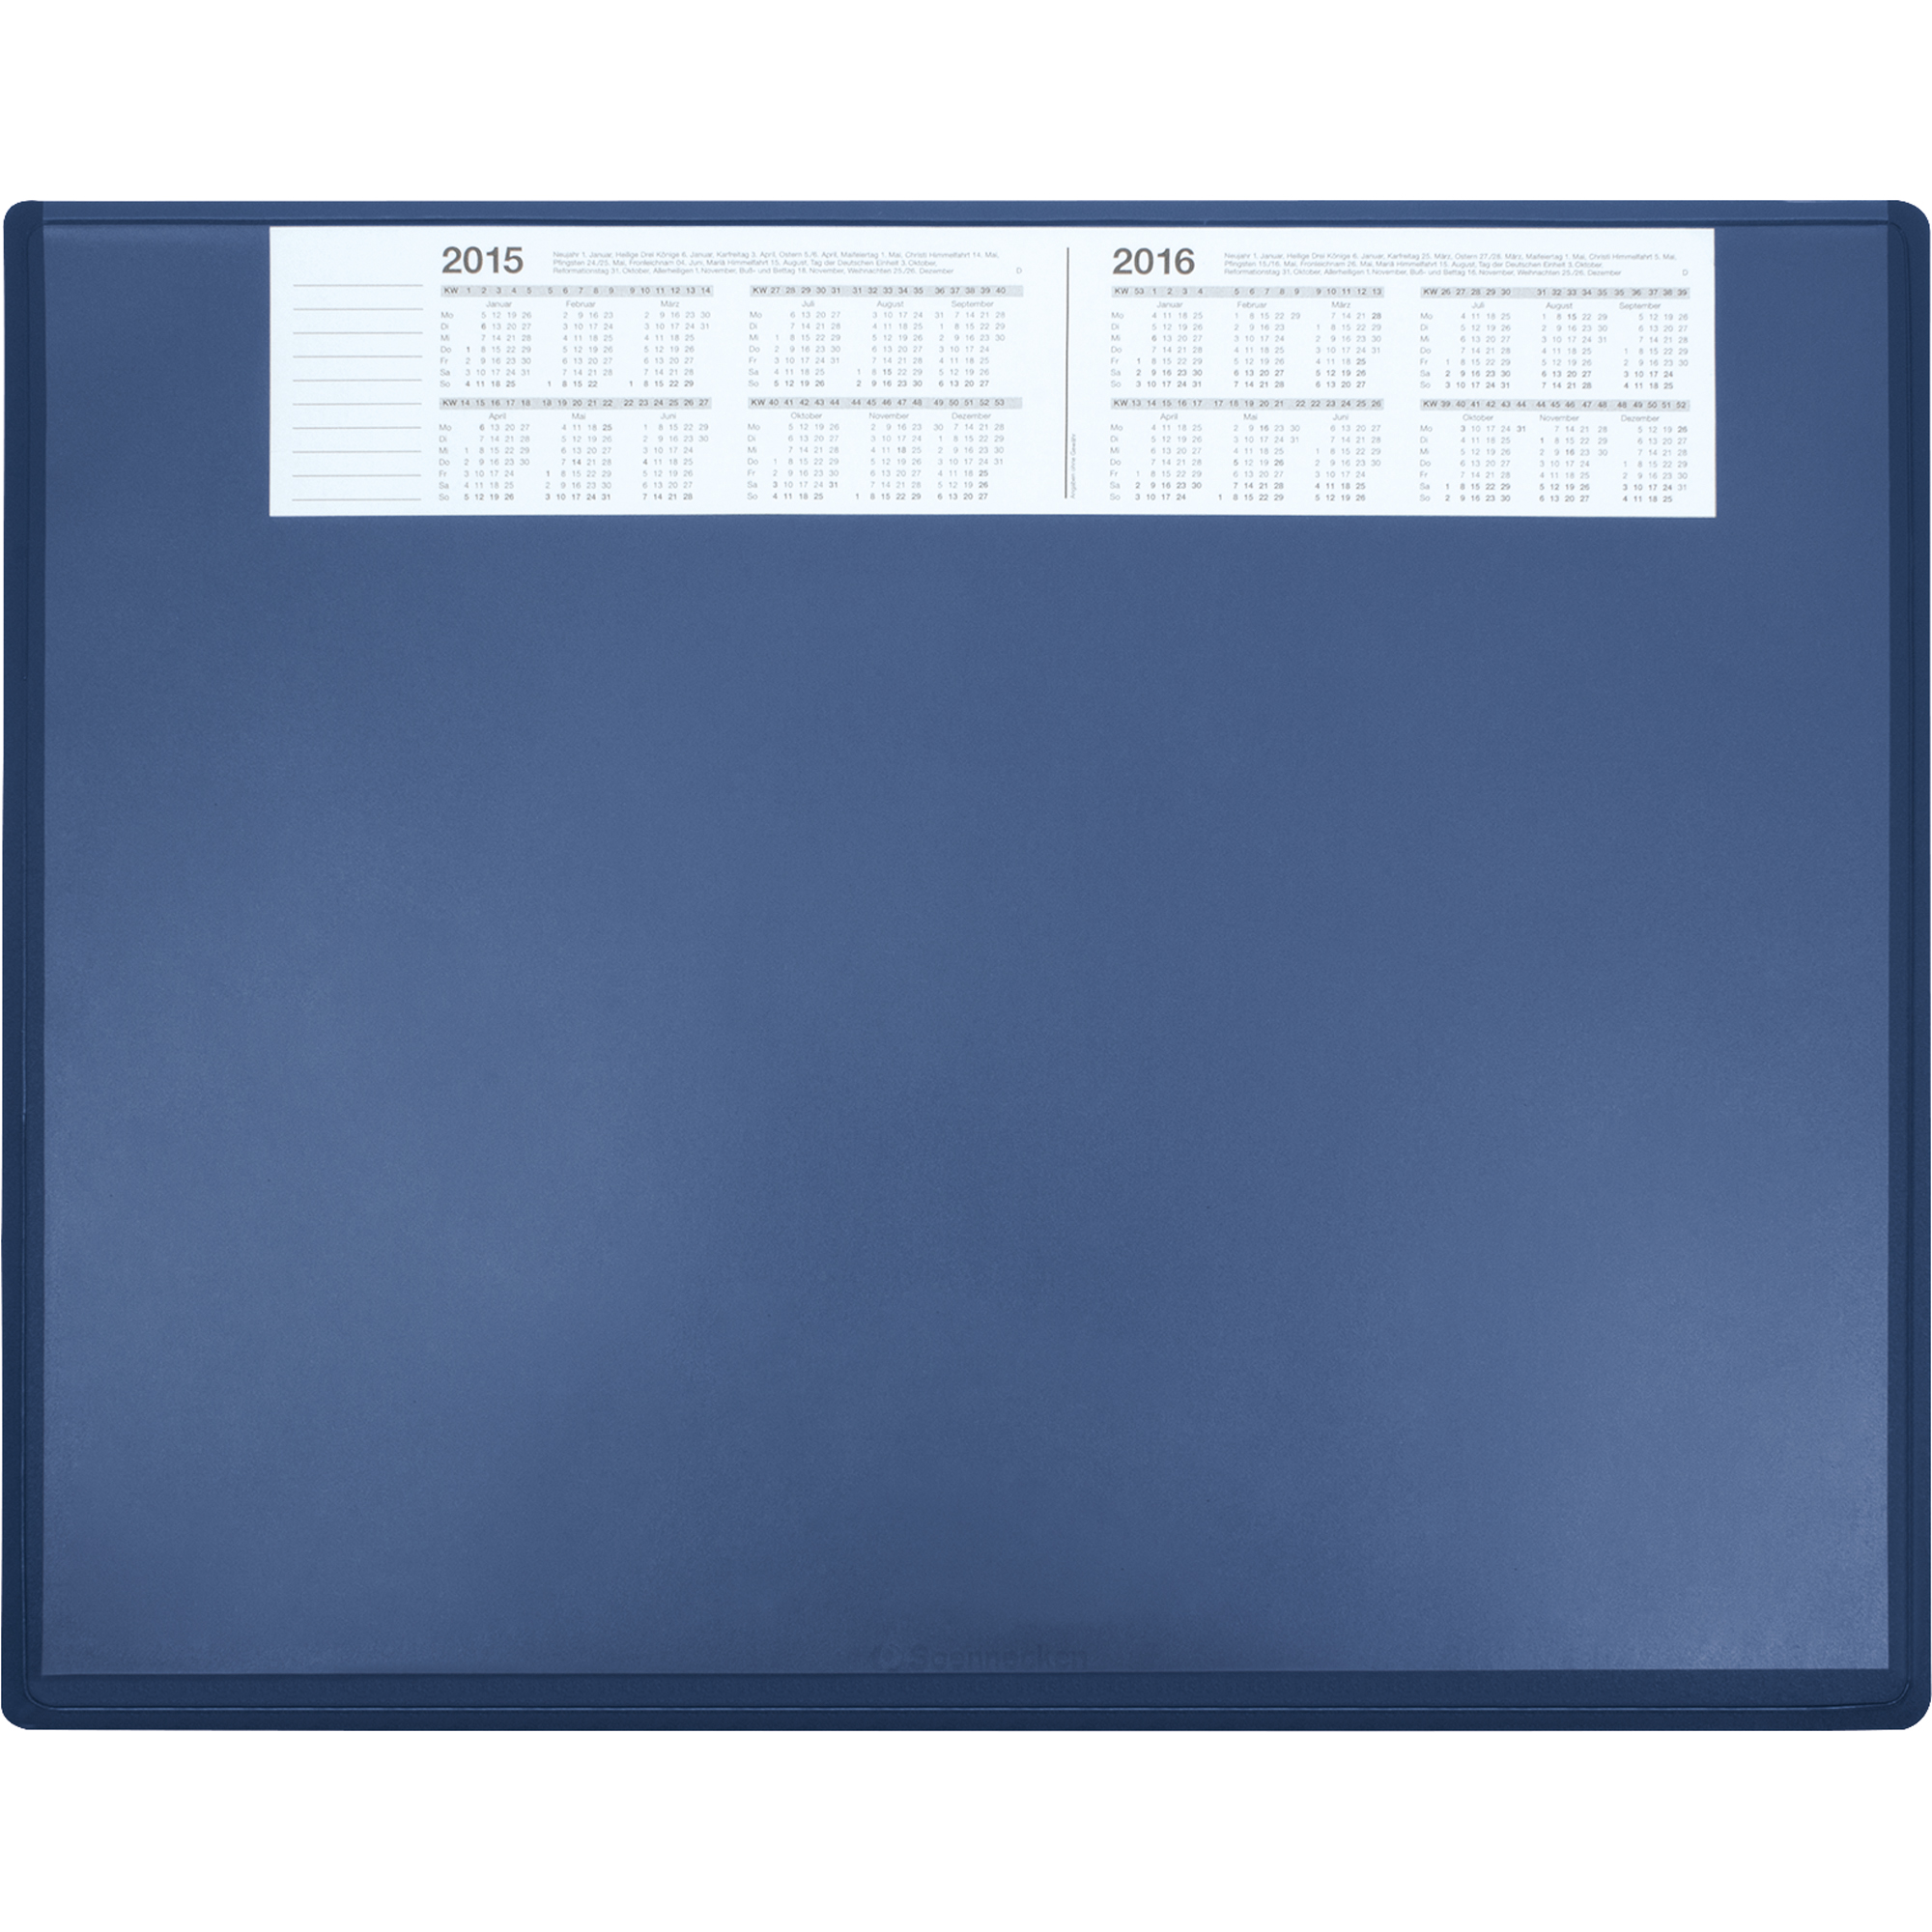 Soennecken Schreibunterlage 63 x 50 cm mit Kalender blau